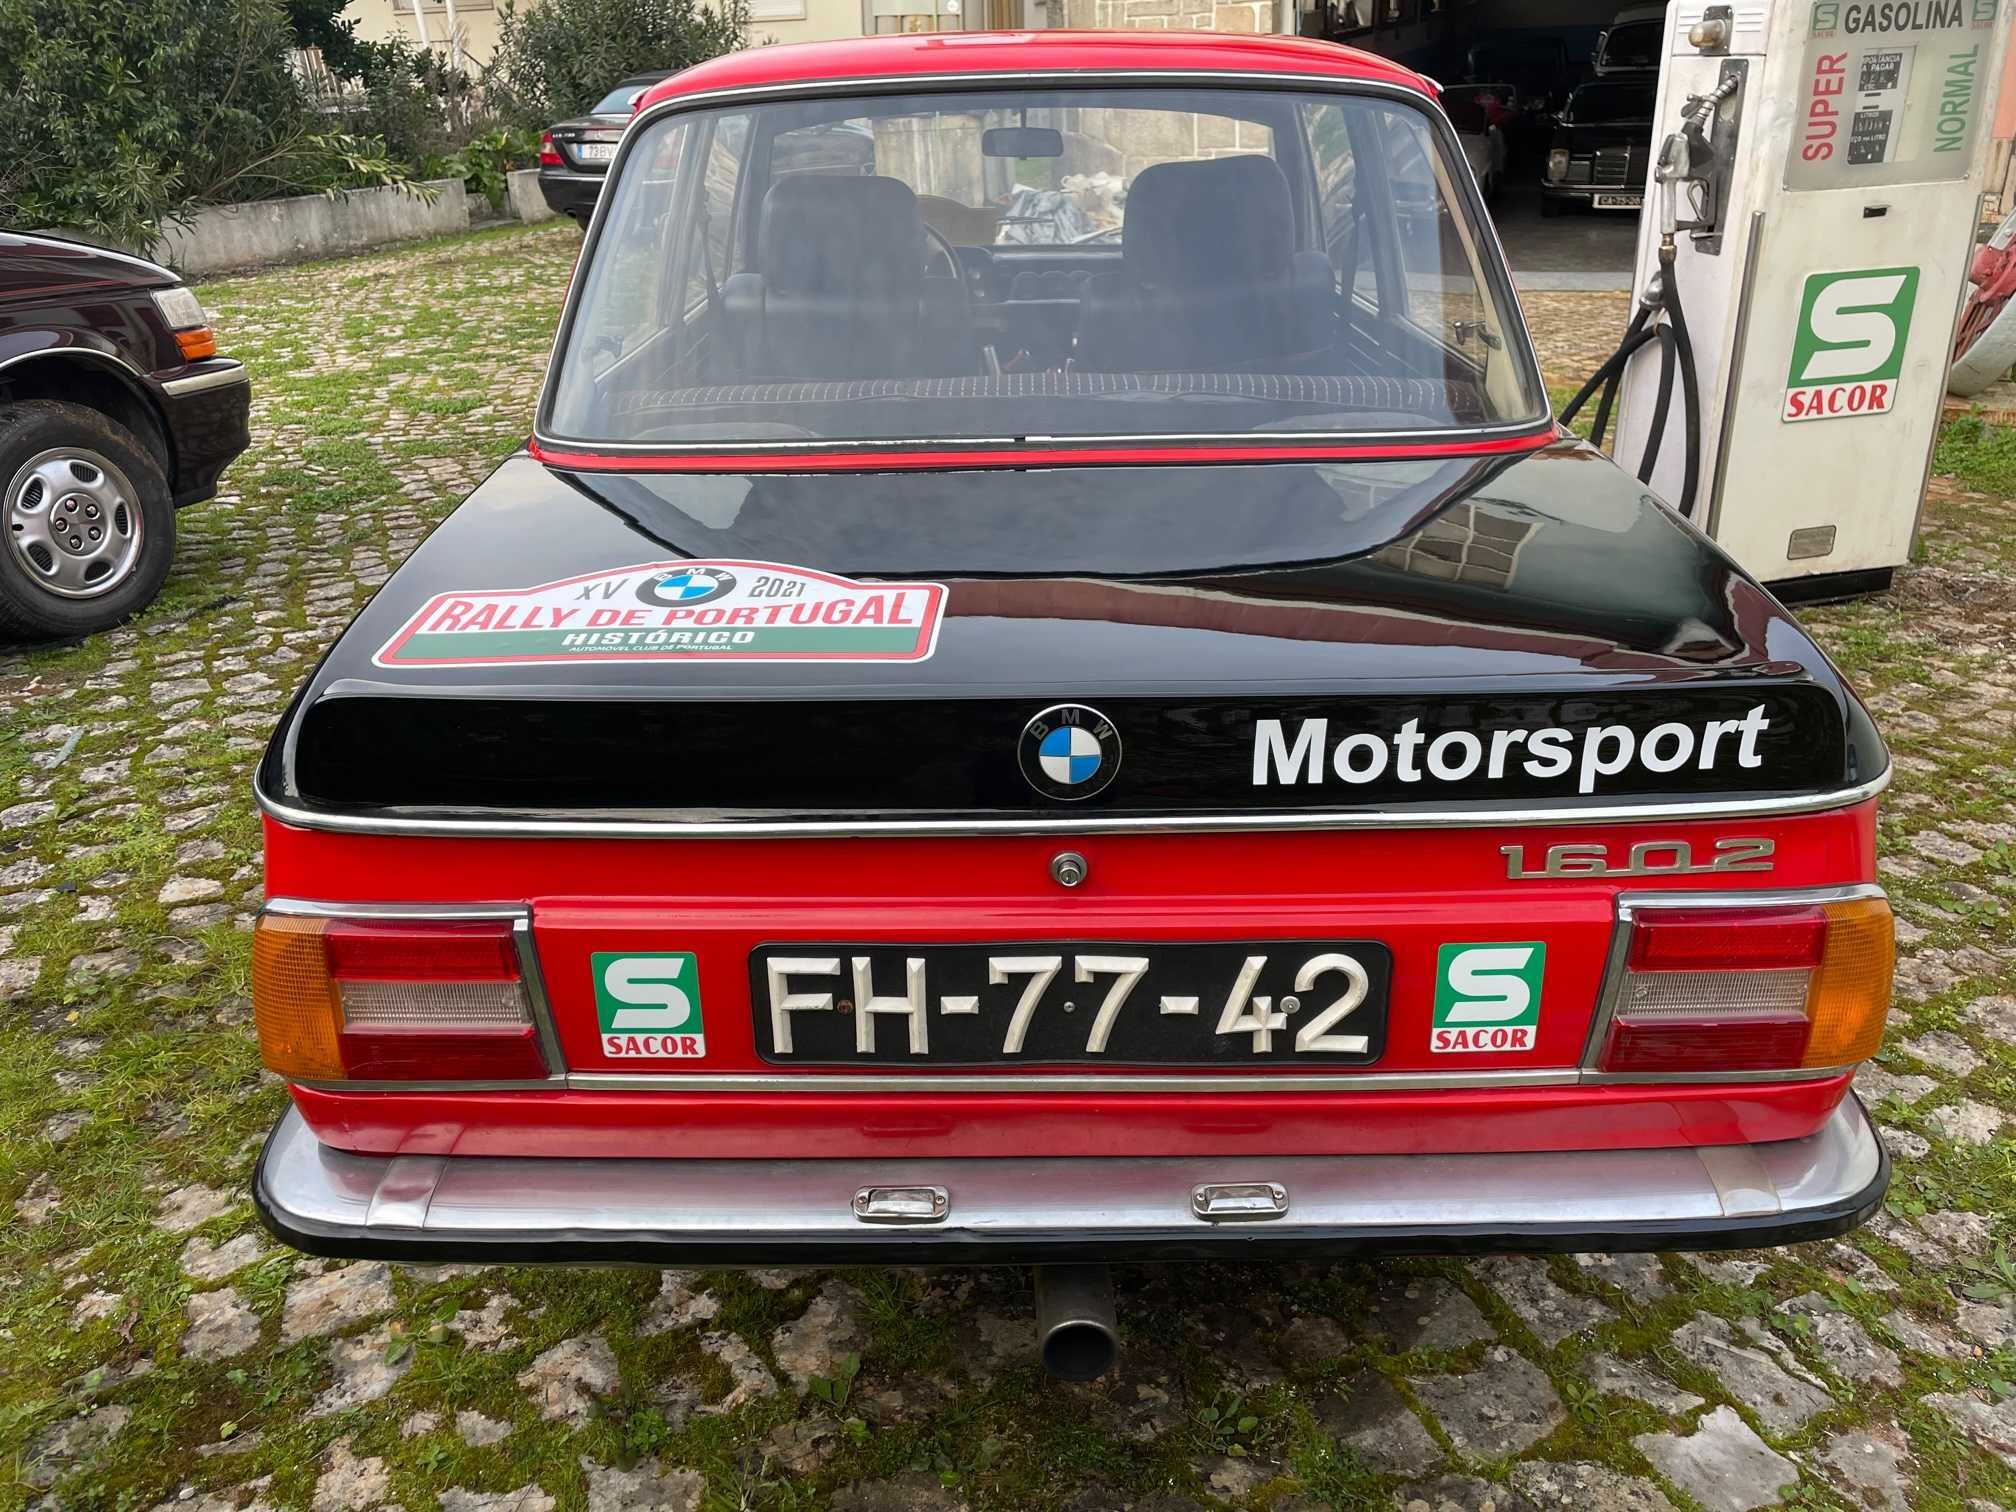 BMW 1602 sport e estrada